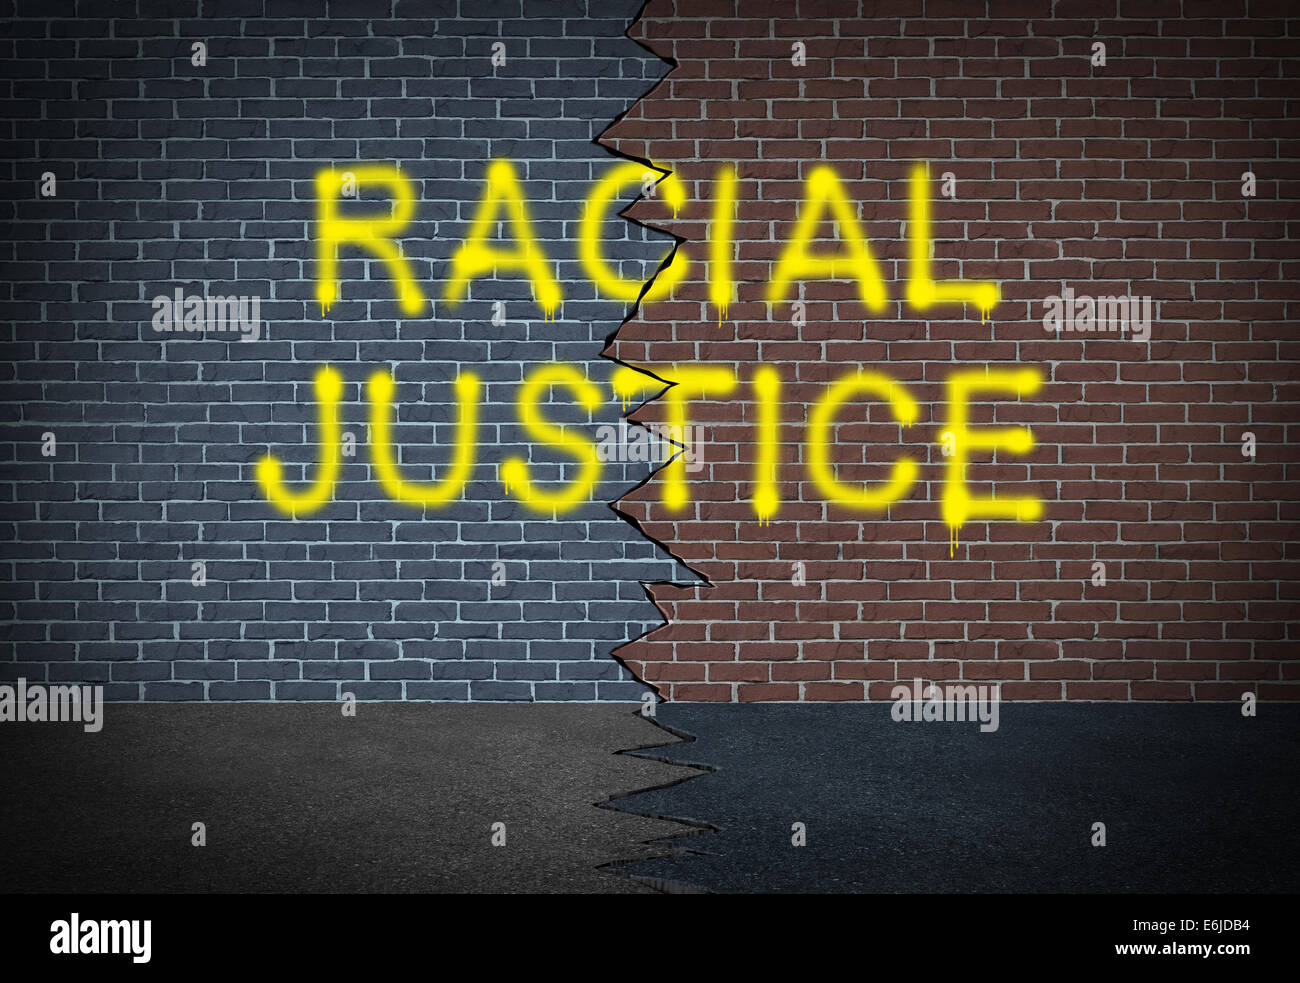 Rassistische Justiz und Bekämpfung der Diskriminierung Konzept und Race Relations Sozialausgabe Symbol als Graffiti Schreiben auf eine zwei getönten Mauer als Symbol der Zusammenarbeit für Bürgerrechte und gemeinschaftliche Zusammenarbeit zwischen verschiedenen ethnischen Gruppen. Stockfoto